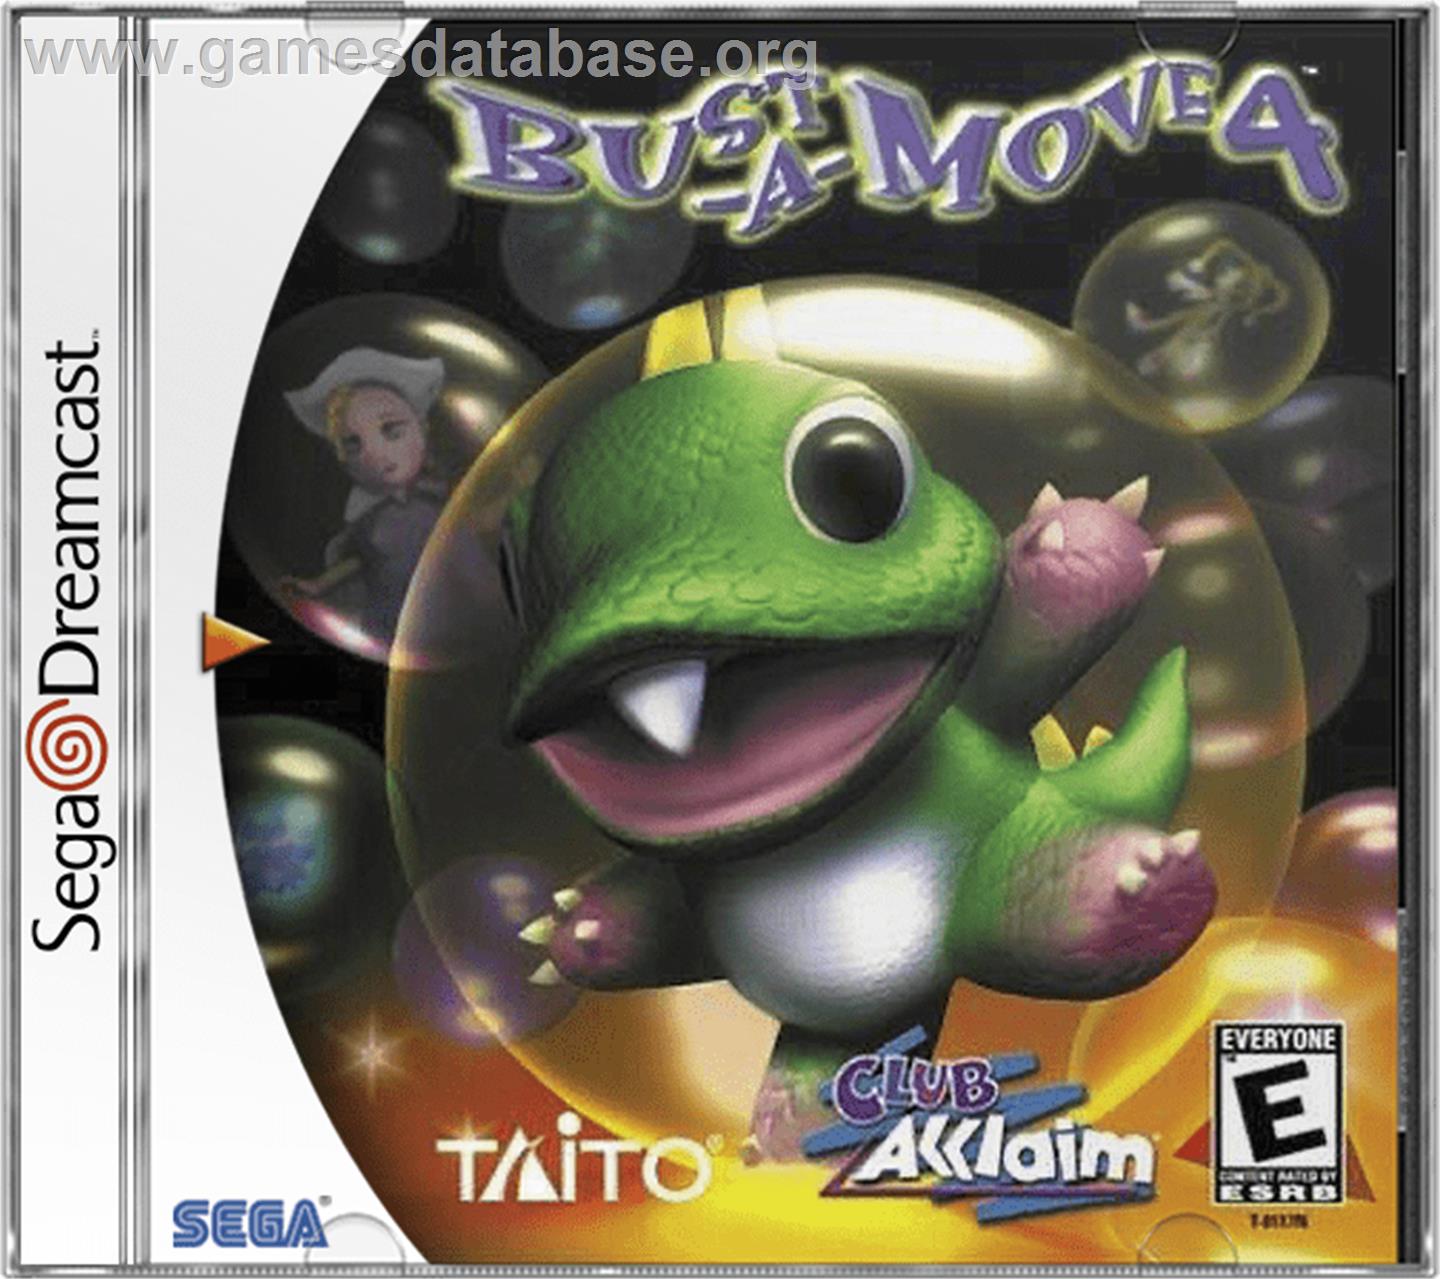 Bust a Move 4 - Sega Dreamcast - Artwork - Box